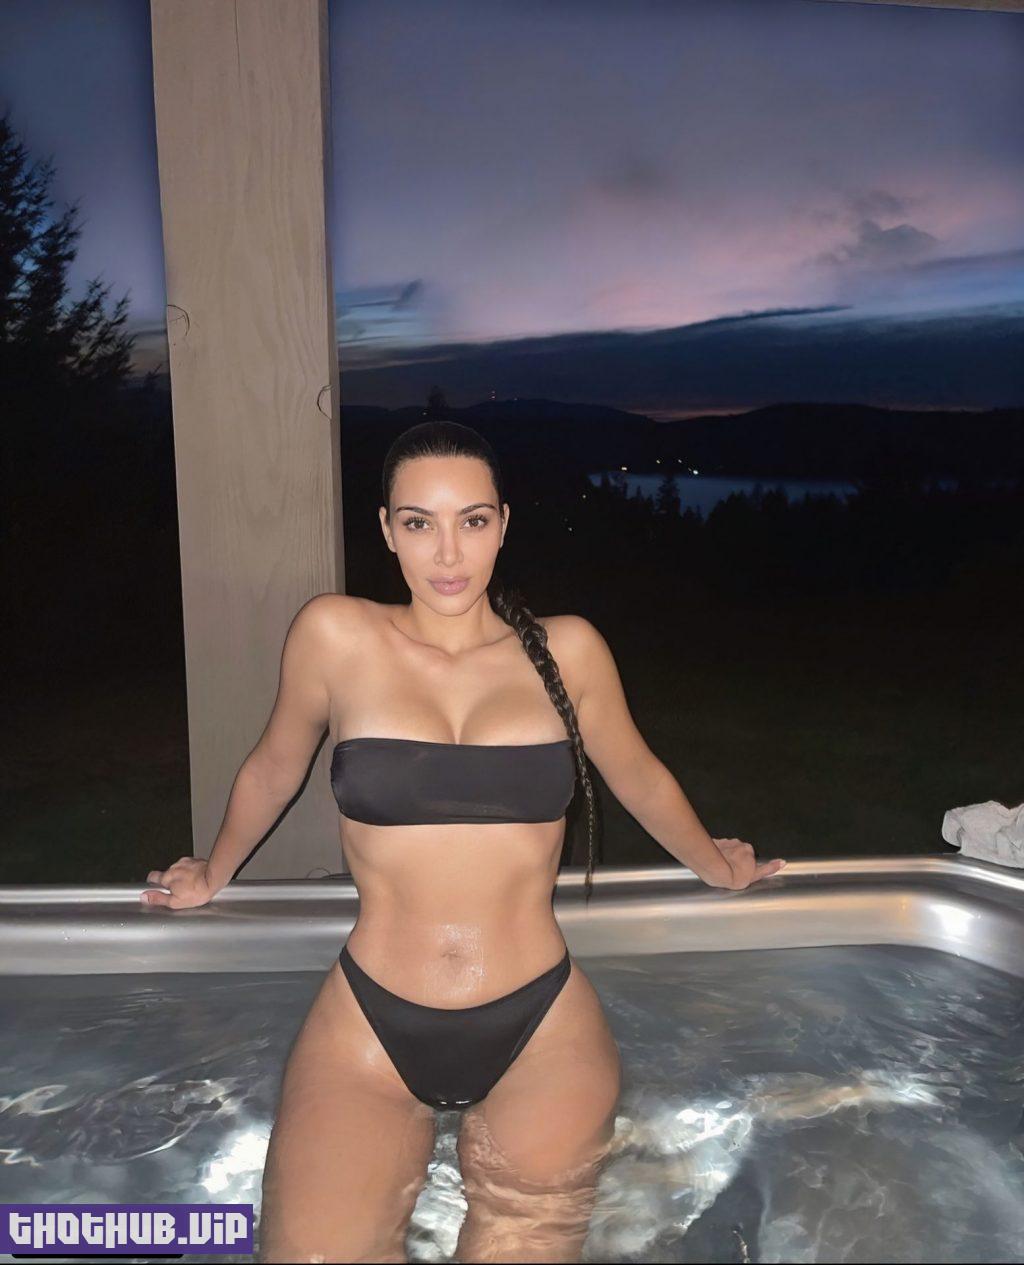 Kim Kardashian Sexy BOdy in Bikini 1 thefappeningblog.com